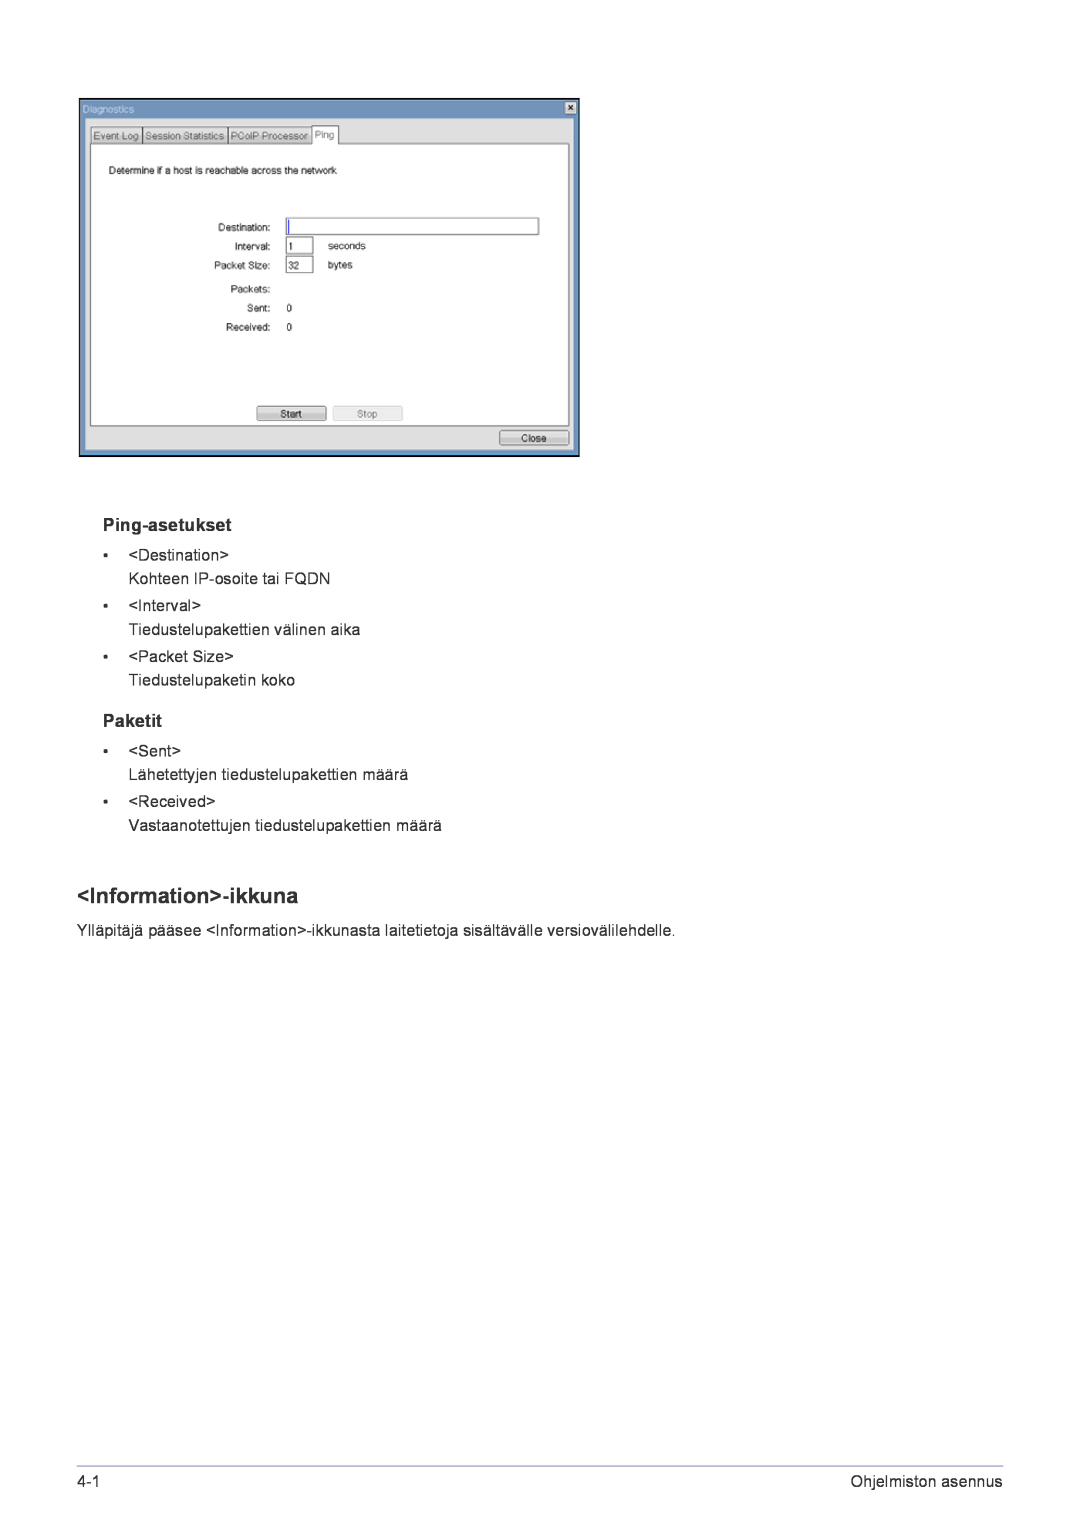 Samsung LF22NPBHBNP/EN manual Information-ikkuna, Ping-asetukset, Paketit, Ohjelmiston asennus 